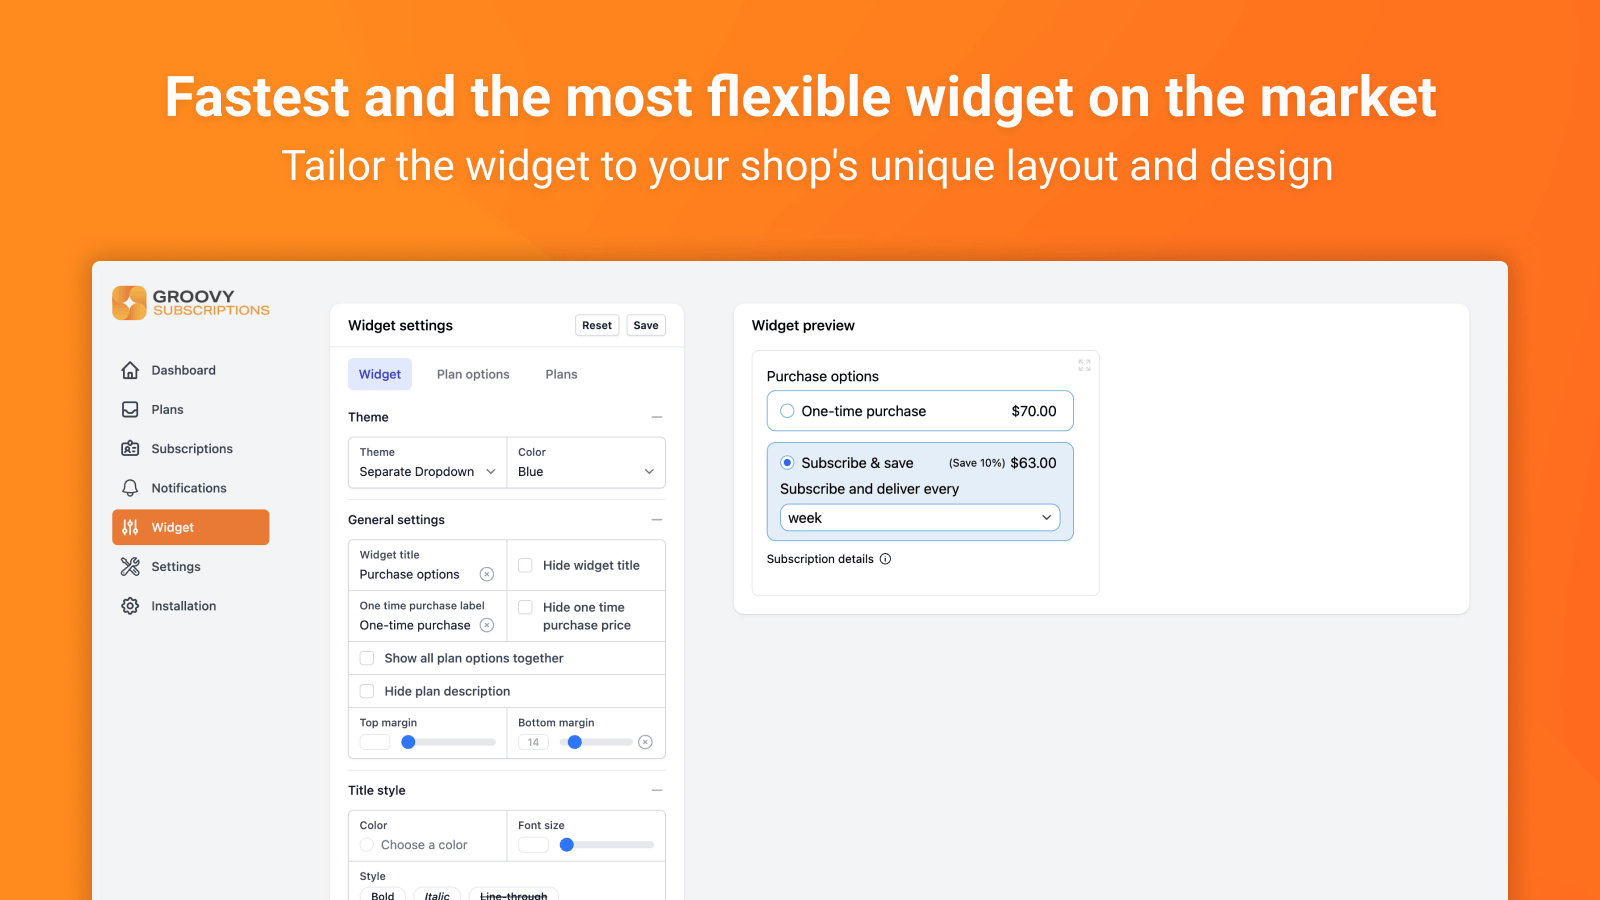 El widget más rápido y flexible del mercado